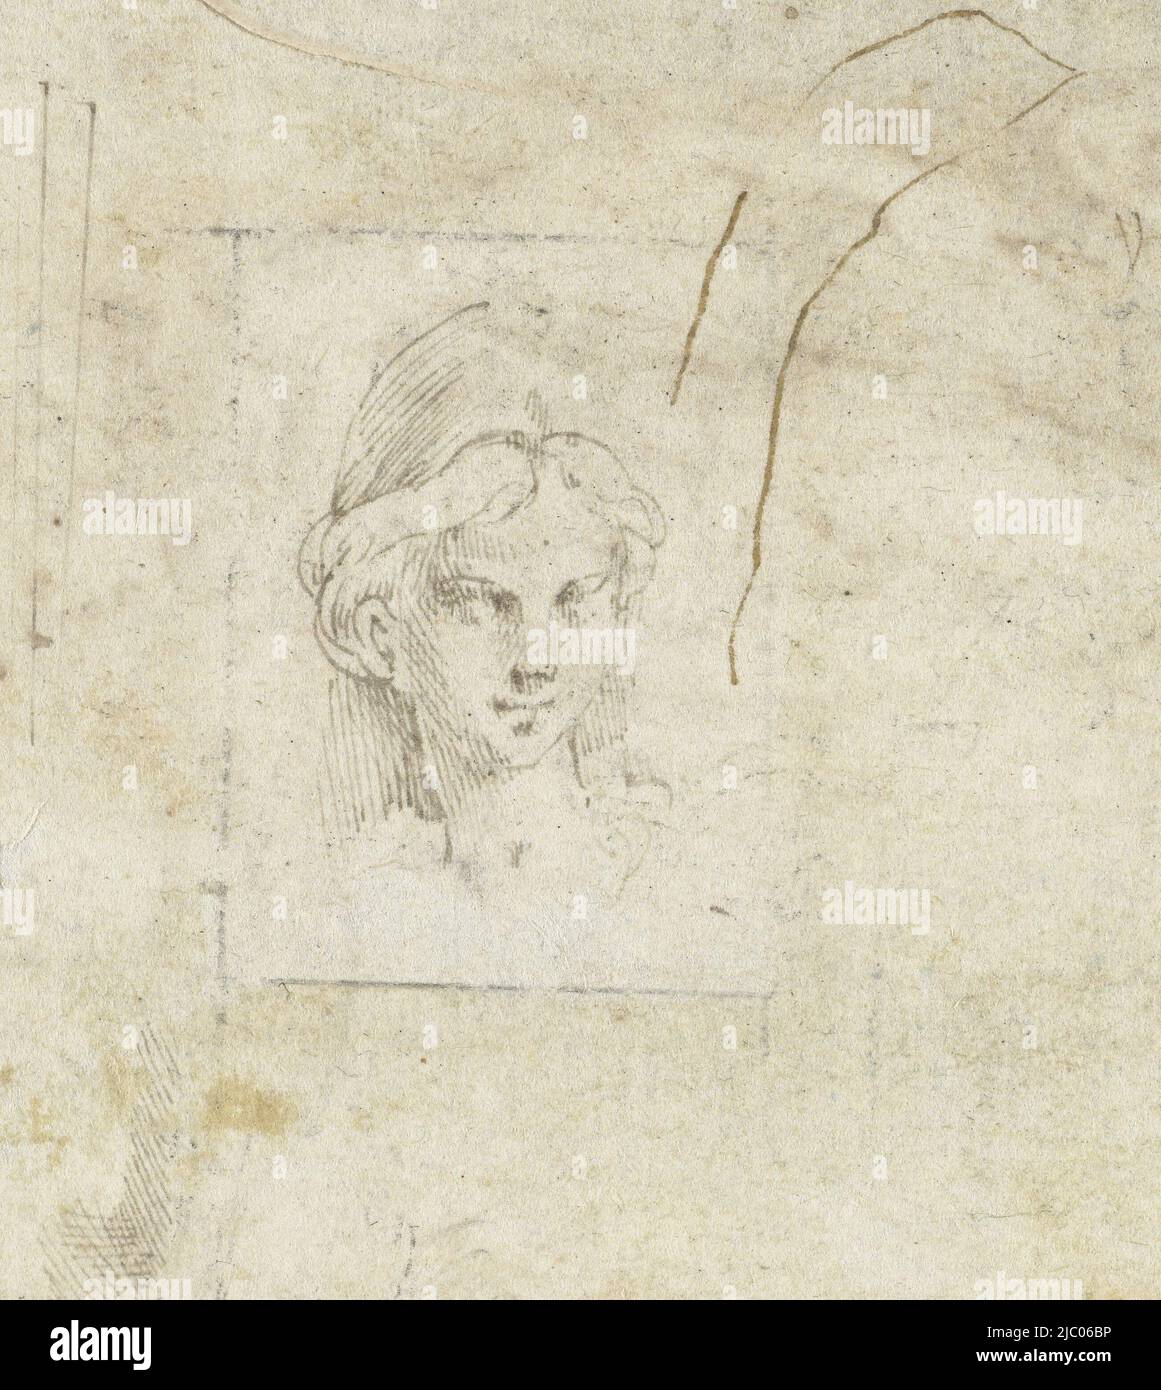 Chef d'une femme portant un casque (Minerva?), dessinateur: Parmigianino, 1530 - 1540, papier, stylo, h 108 mm × l 79 mm Banque D'Images